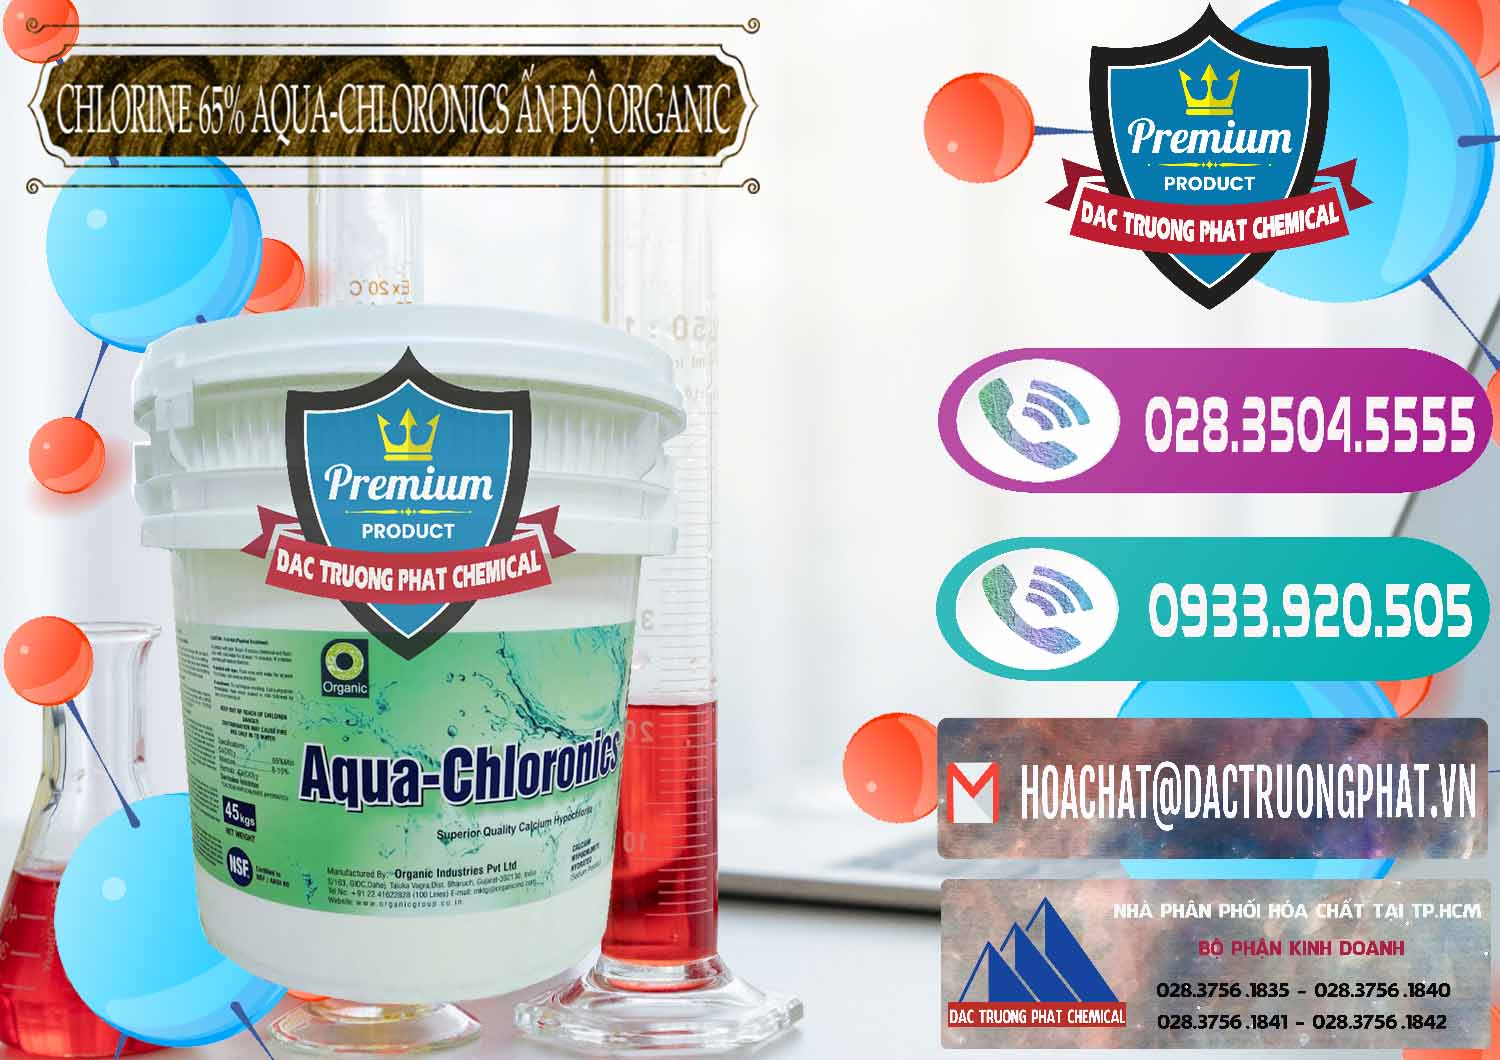 Nơi chuyên nhập khẩu _ bán Chlorine – Clorin 65% Aqua-Chloronics Ấn Độ Organic India - 0210 - Công ty chuyên phân phối & cung ứng hóa chất tại TP.HCM - hoachatxulynuoc.com